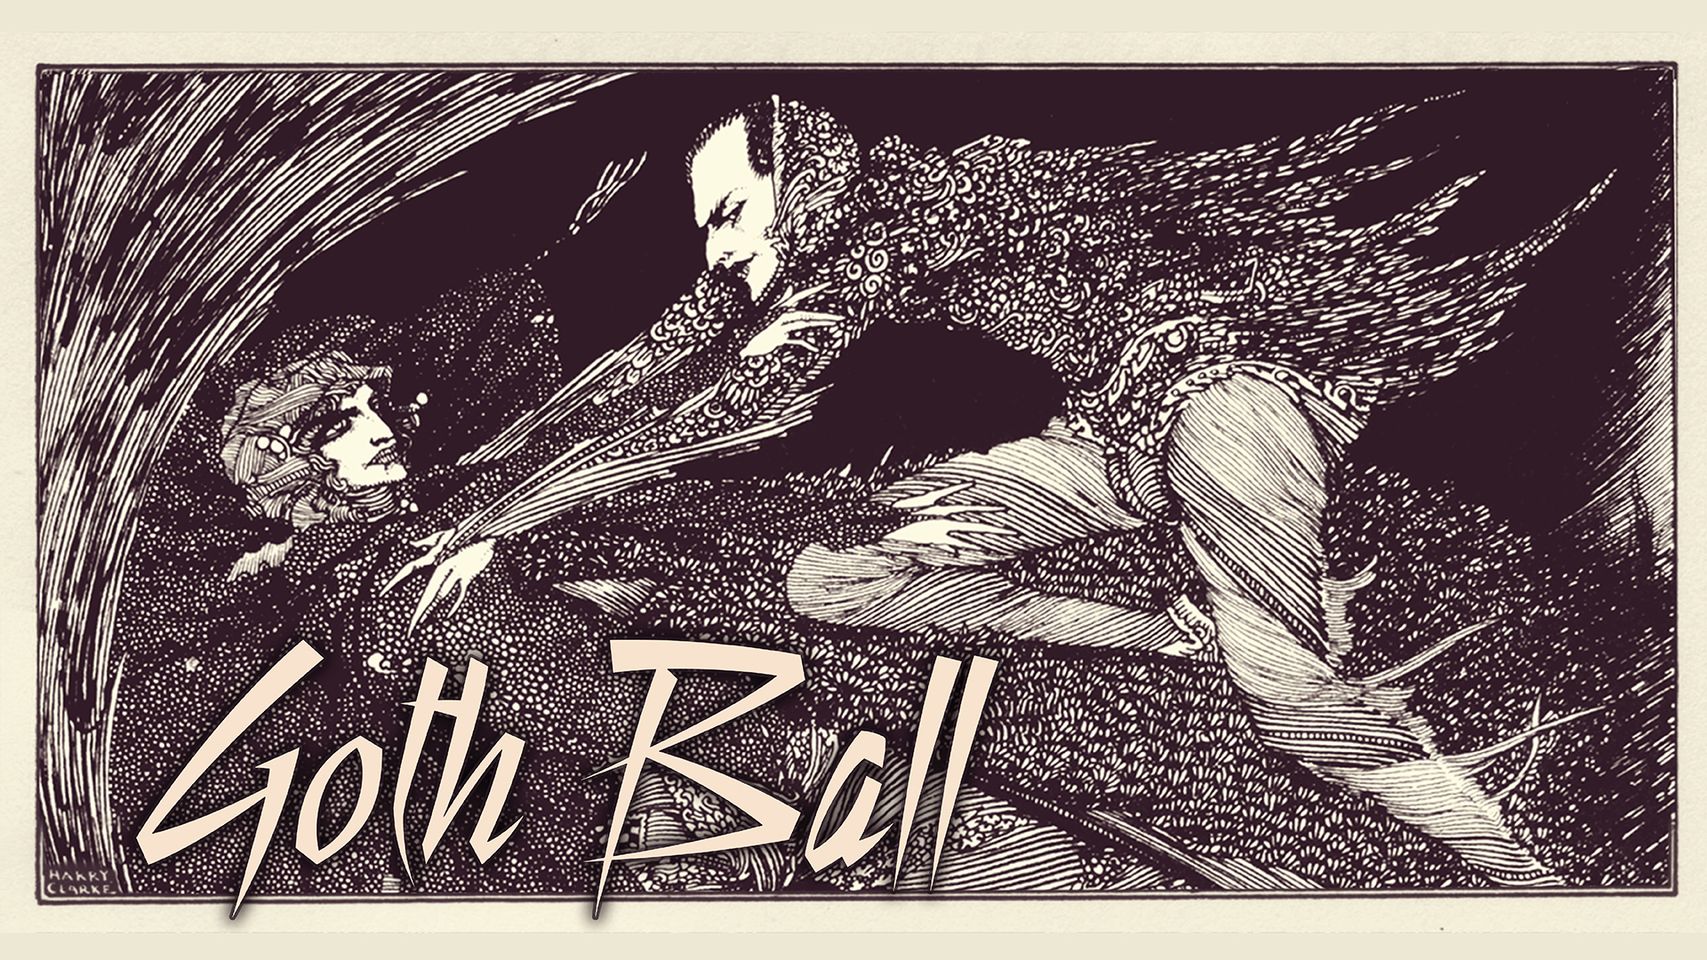 Goth Ball